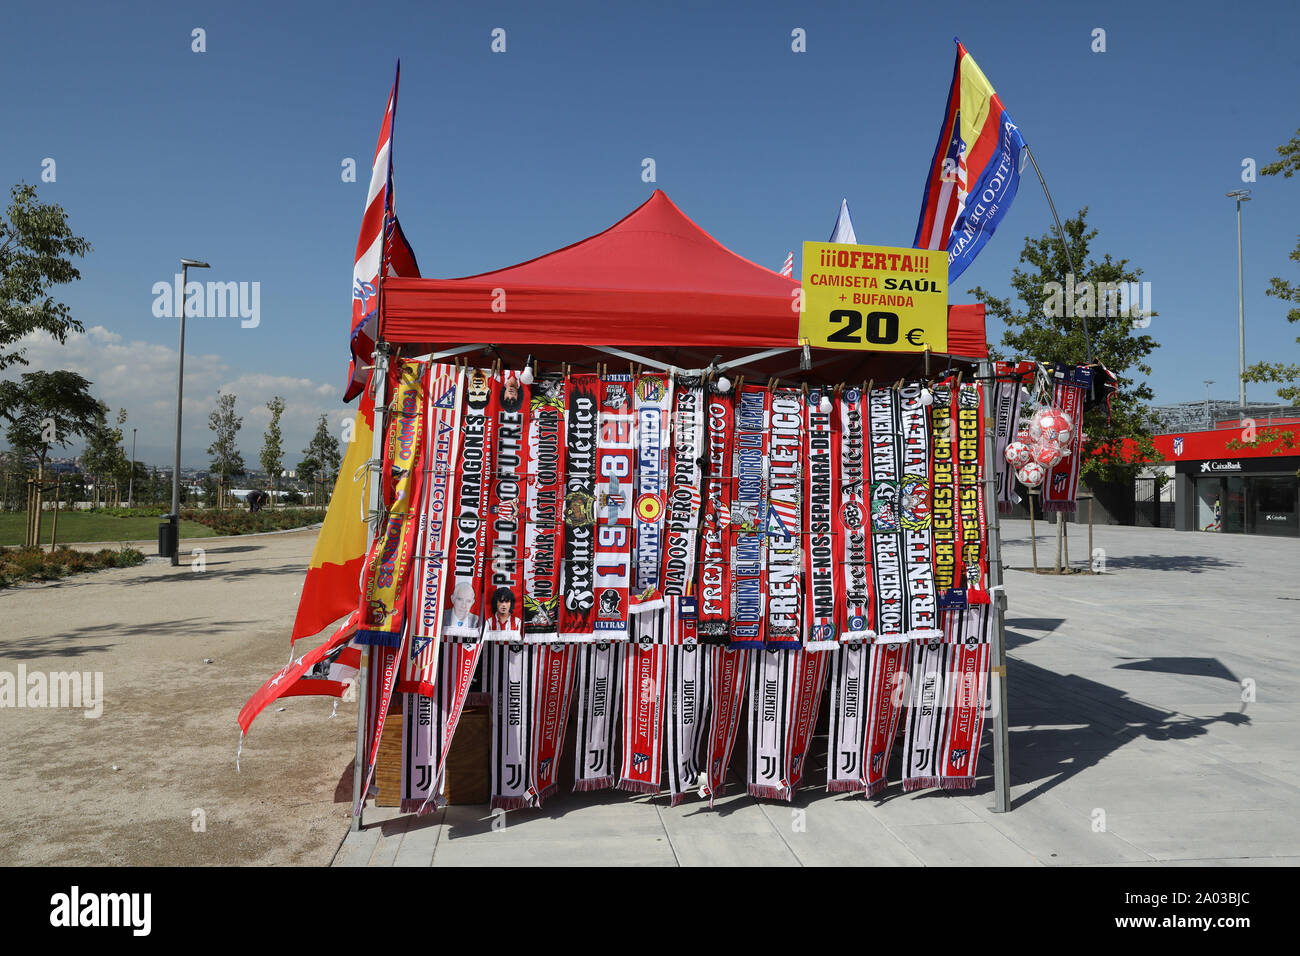 Madrid, España. 18 Sep, 2019. Cale banderas y bufandas en las inmediaciones del estadio - foto por delante de la UEFA Champions League, Grupo D partido de fútbol entre el